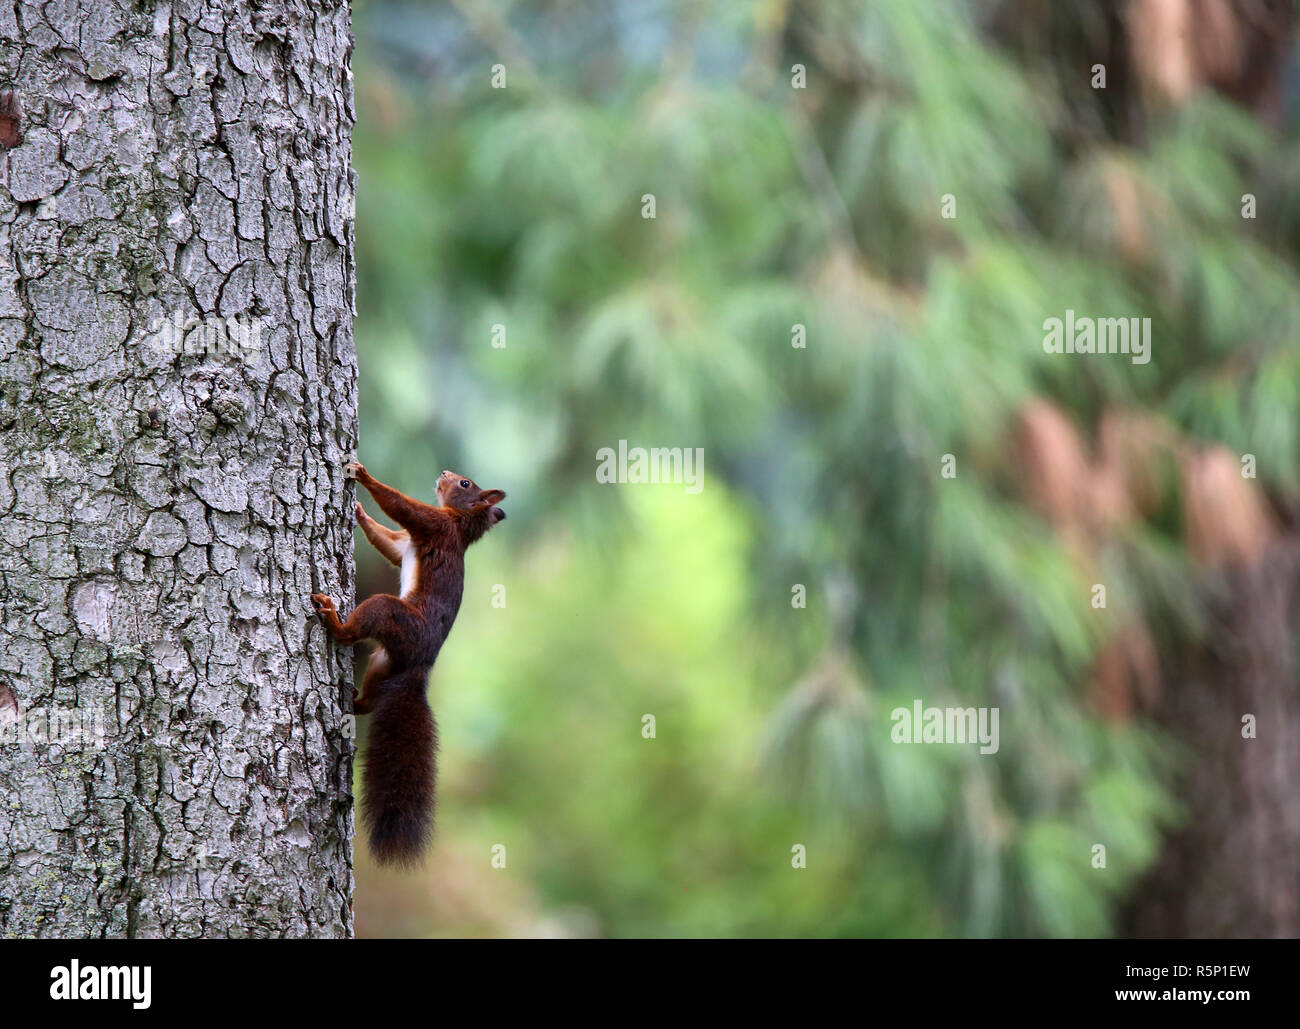 climber on tree trunk - squirrel sciurus vulgaris Stock Photo